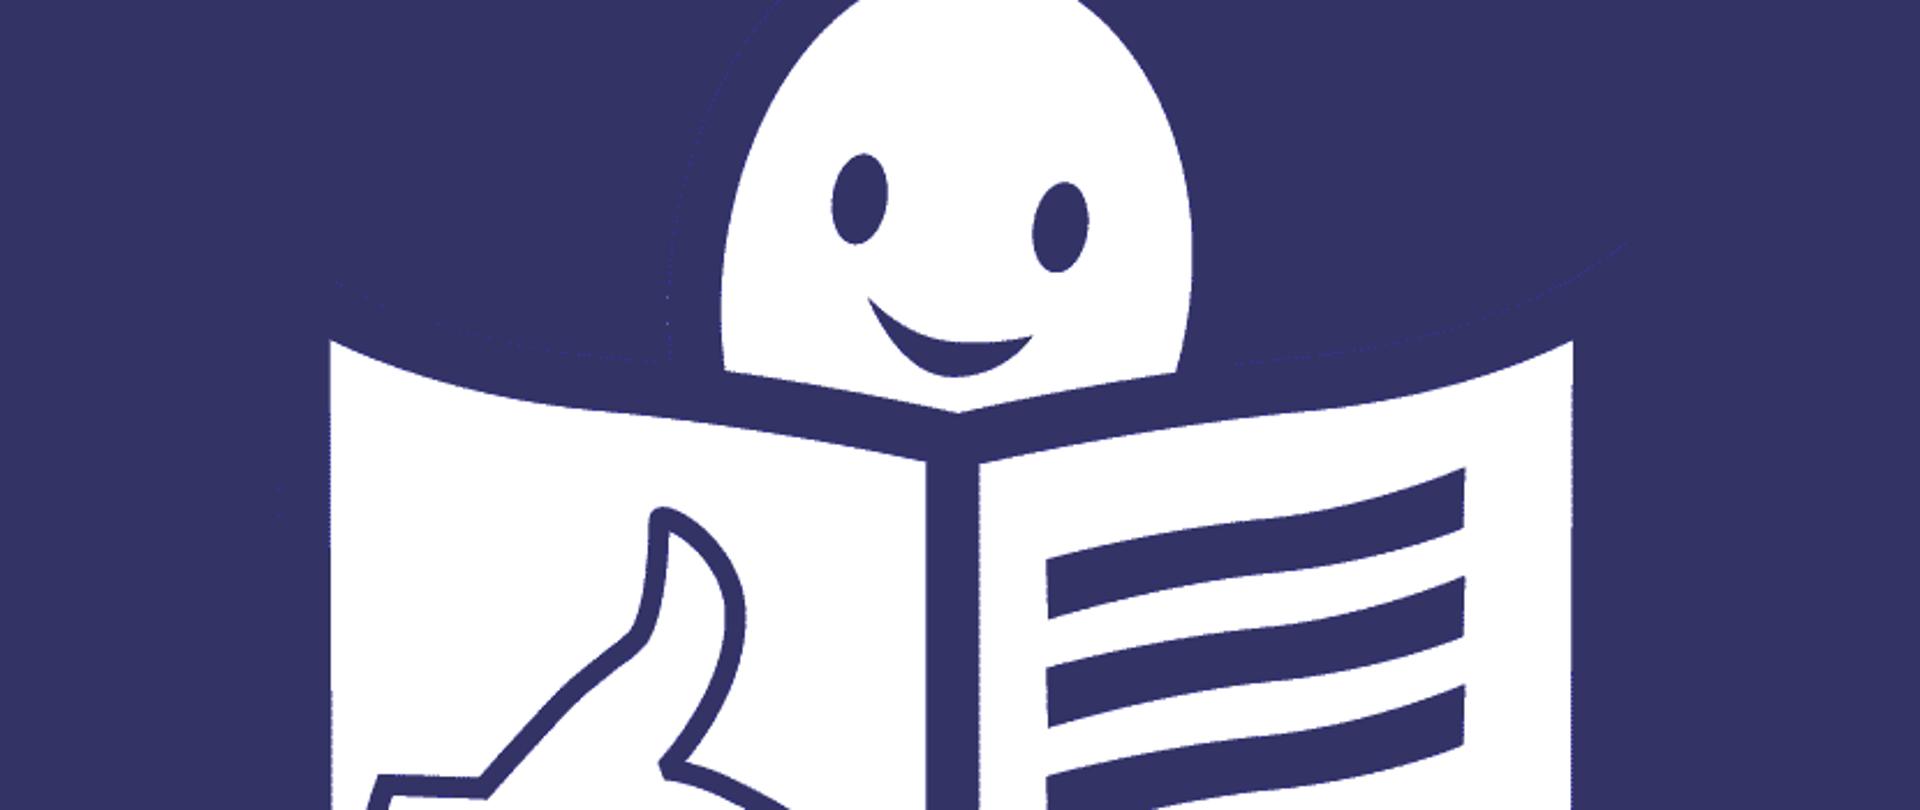 Oznaczenie "Tekst łatwy do czytania i rozumienia": ikona przedstawiająca człowieka z książką i znak OK. 